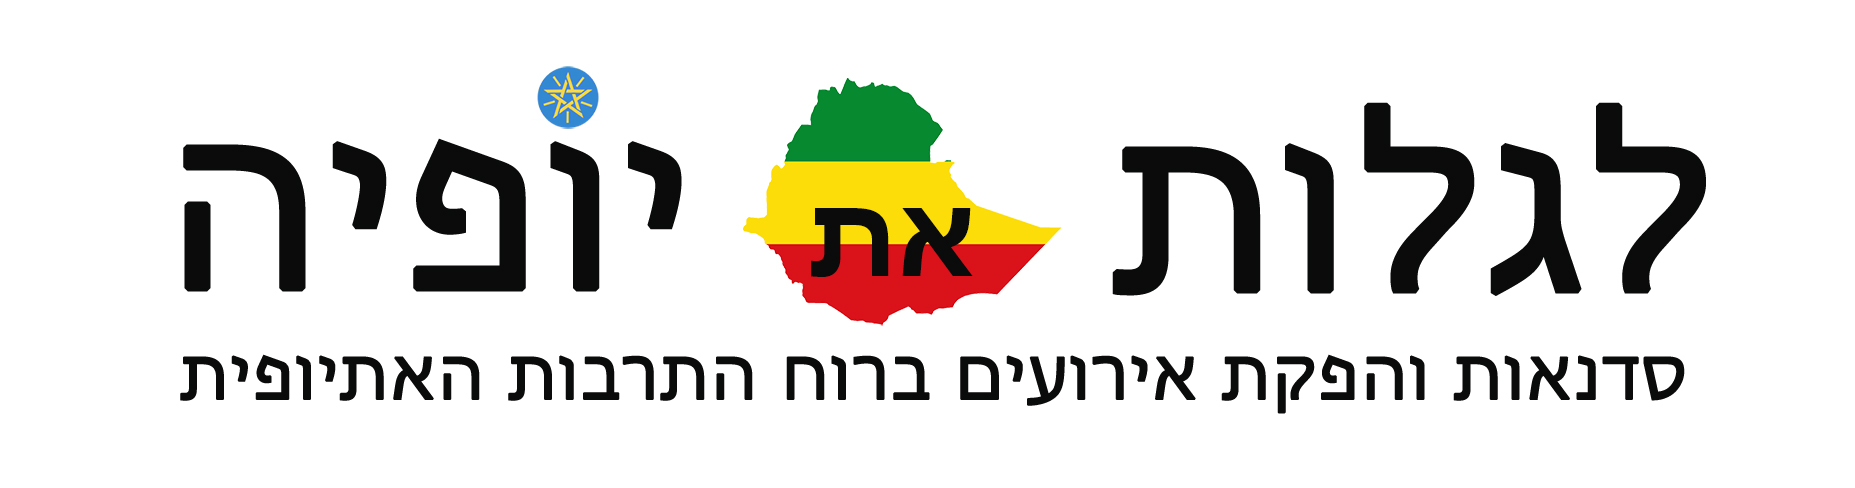 לגלות אתיופיה - logo